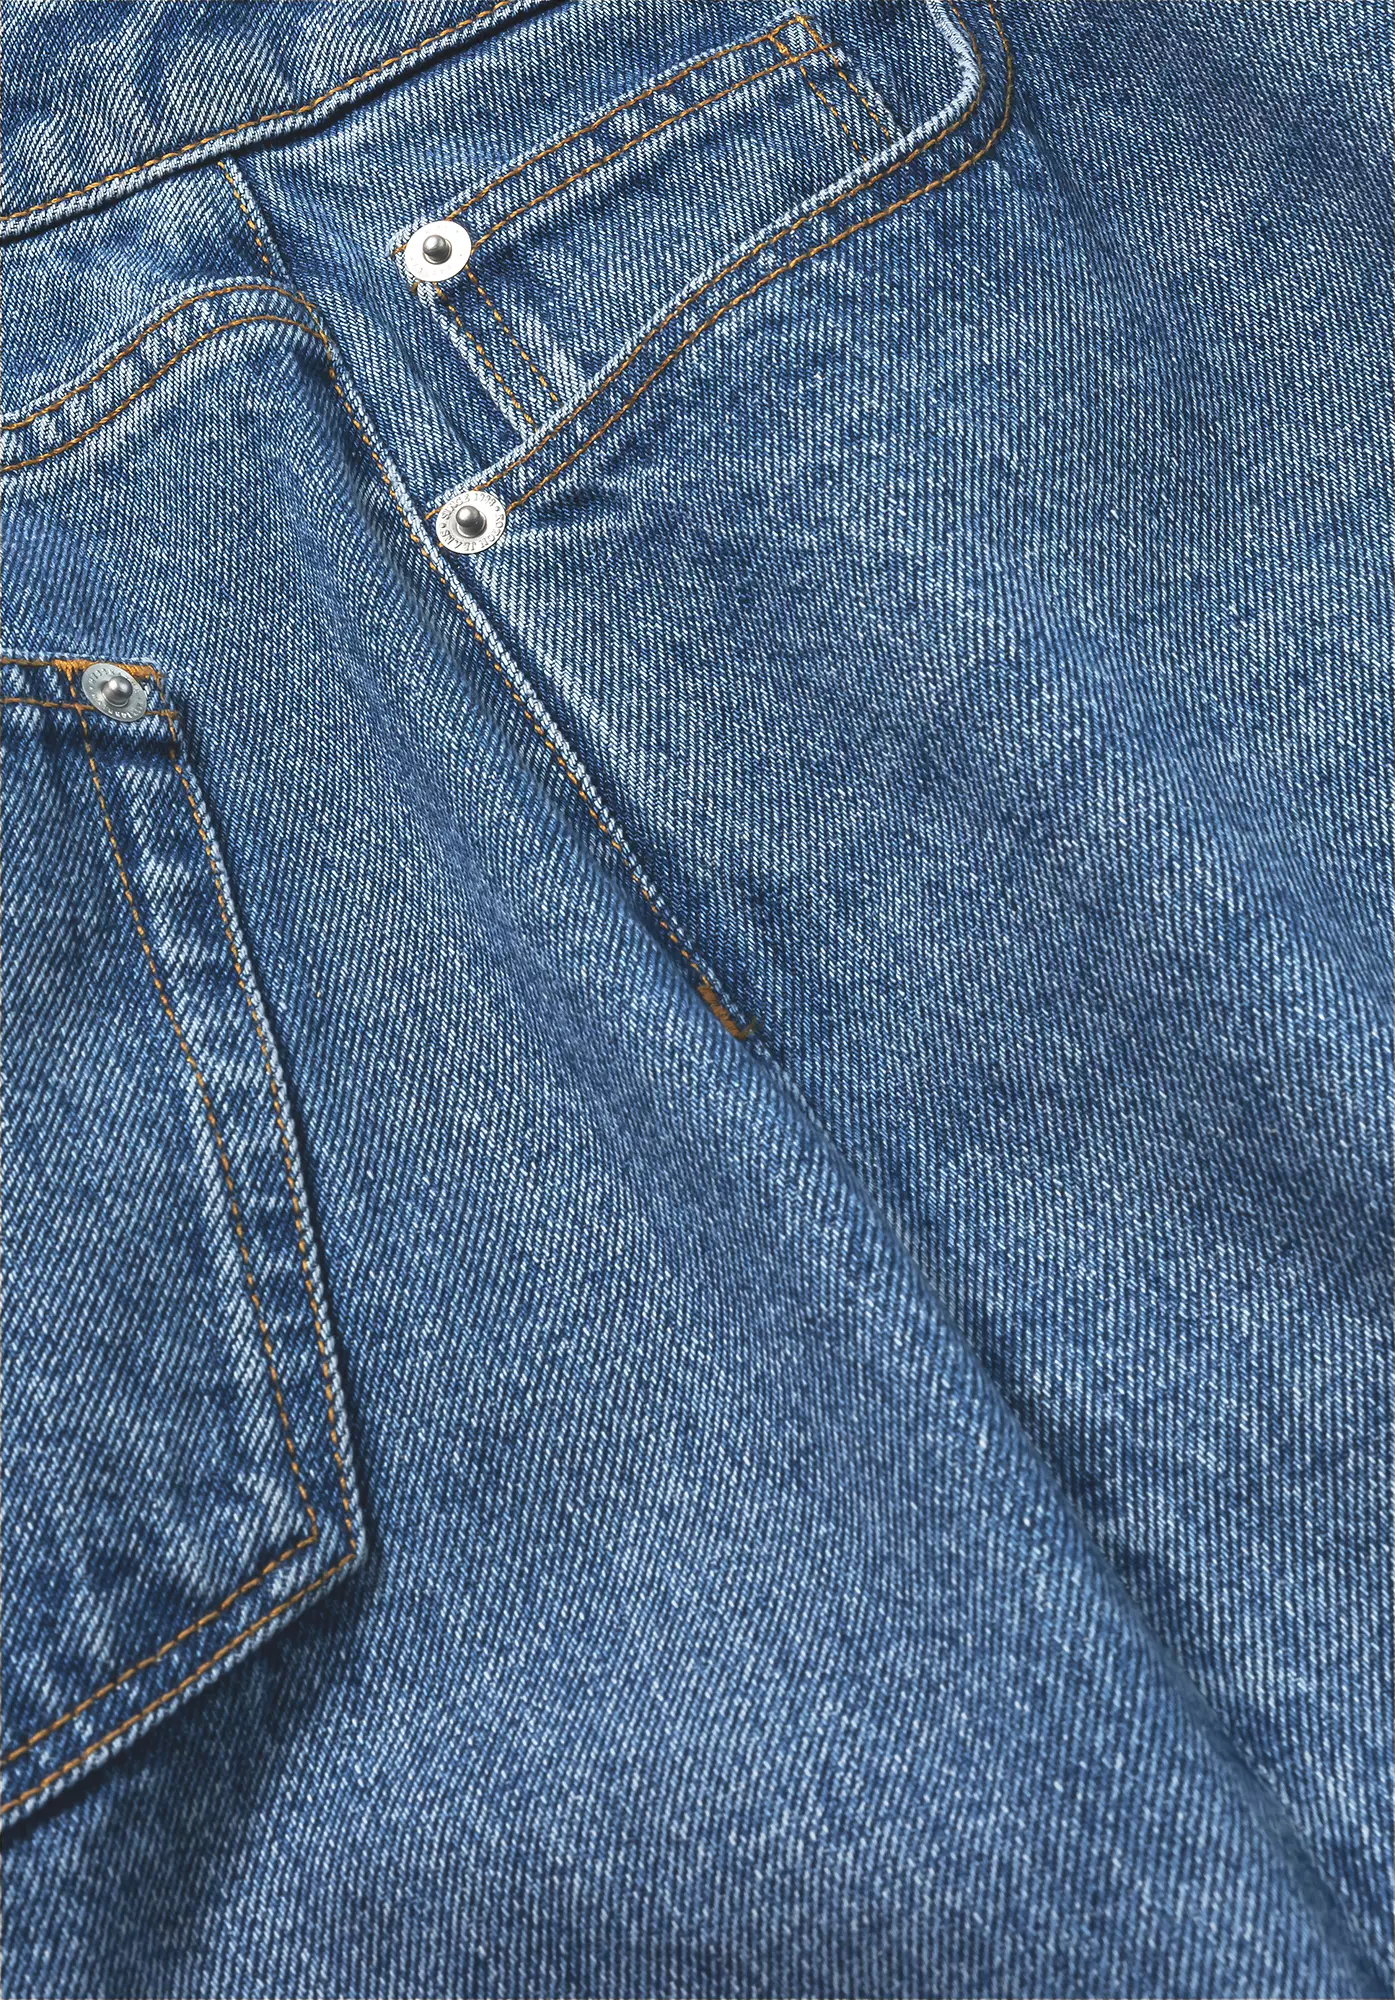 WUNDERKIND X HESSNATUR Jeans High Rise Flared aus reinem Bio-Denim - 5